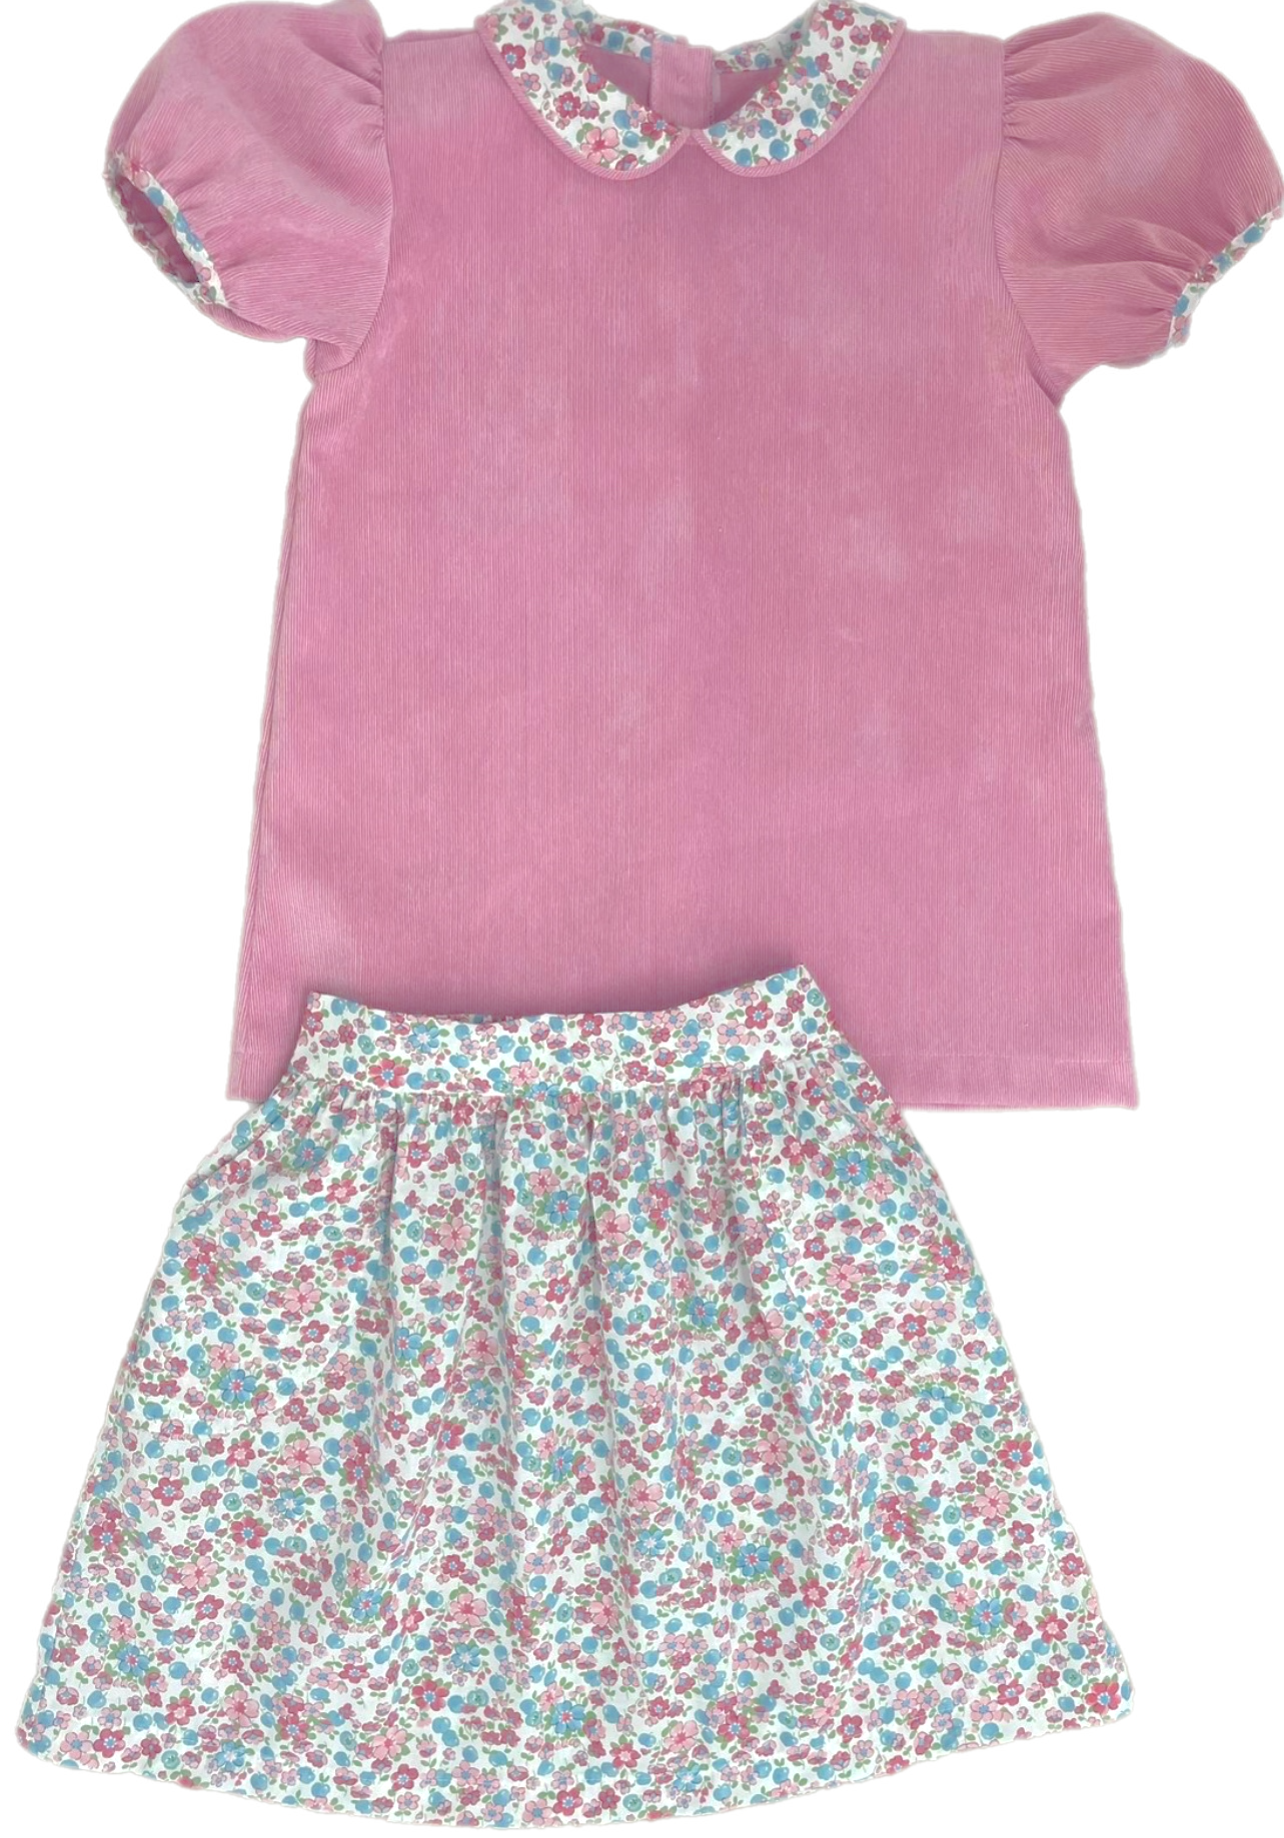 Mia Skirt Set - Floral Cord *PRE-ORDER* (Sizes 7 & 8)